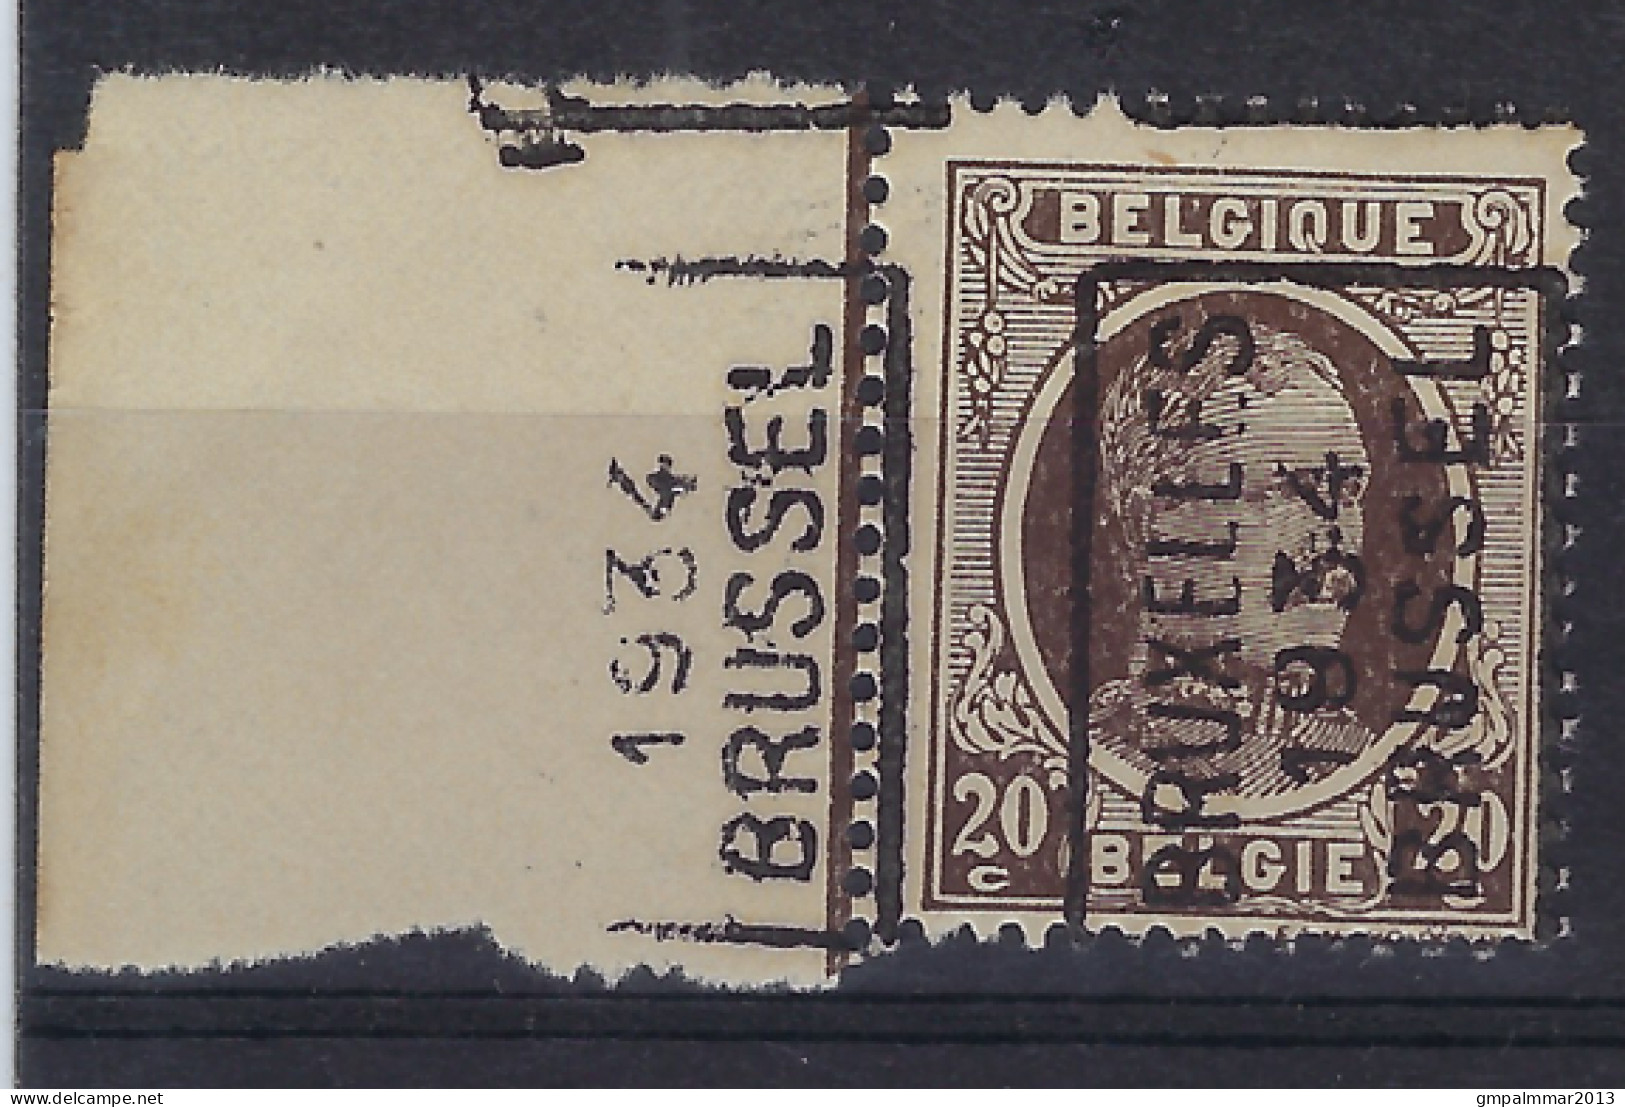 HOUYOUX Nr. 196 Voorafgestempeld Nr. 6039 A   BRUXELLES 1934 BRUSSEL  ; Staat Zie Scan ! LOT 282 - Rollenmarken 1930-..